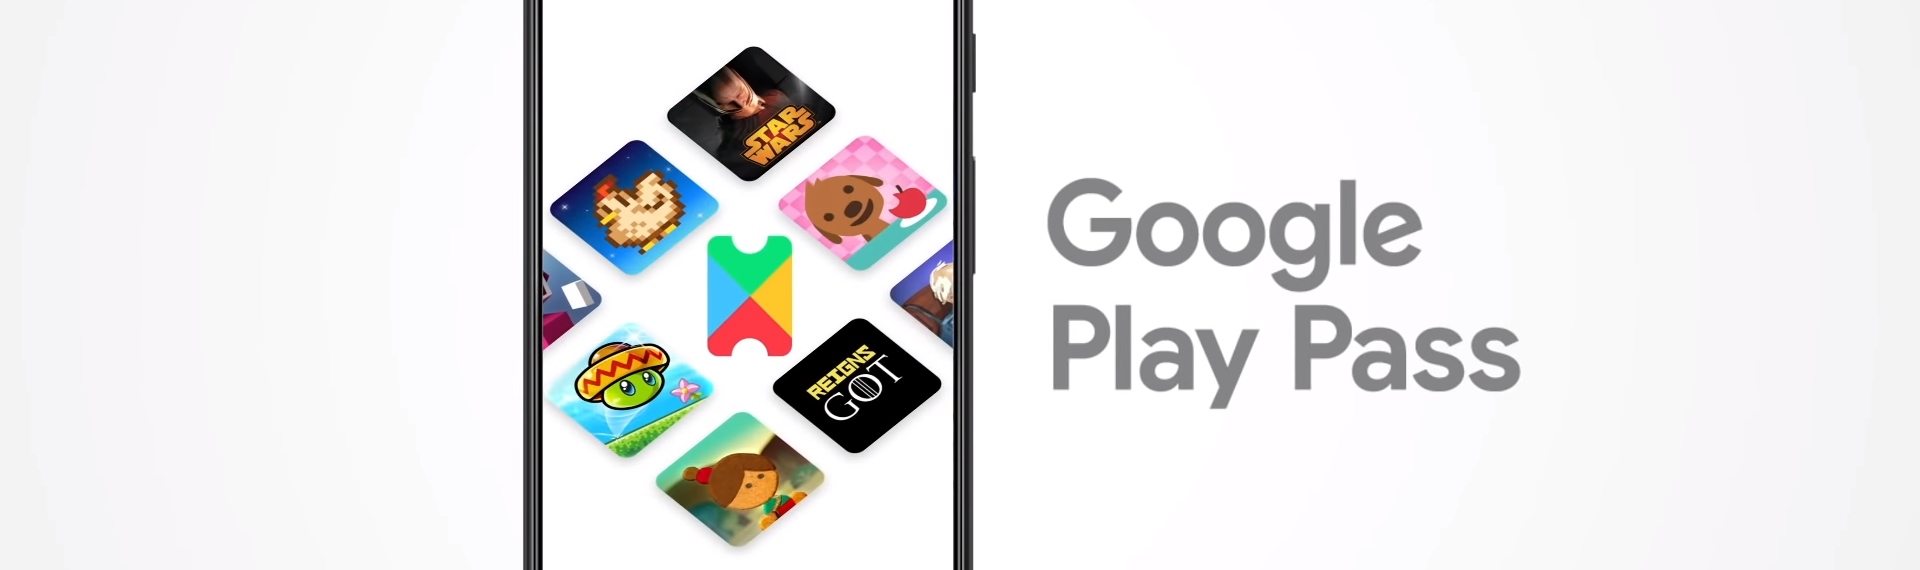 Google giới thiệu gói Google Play Pass với giá 4,99 đô một tháng